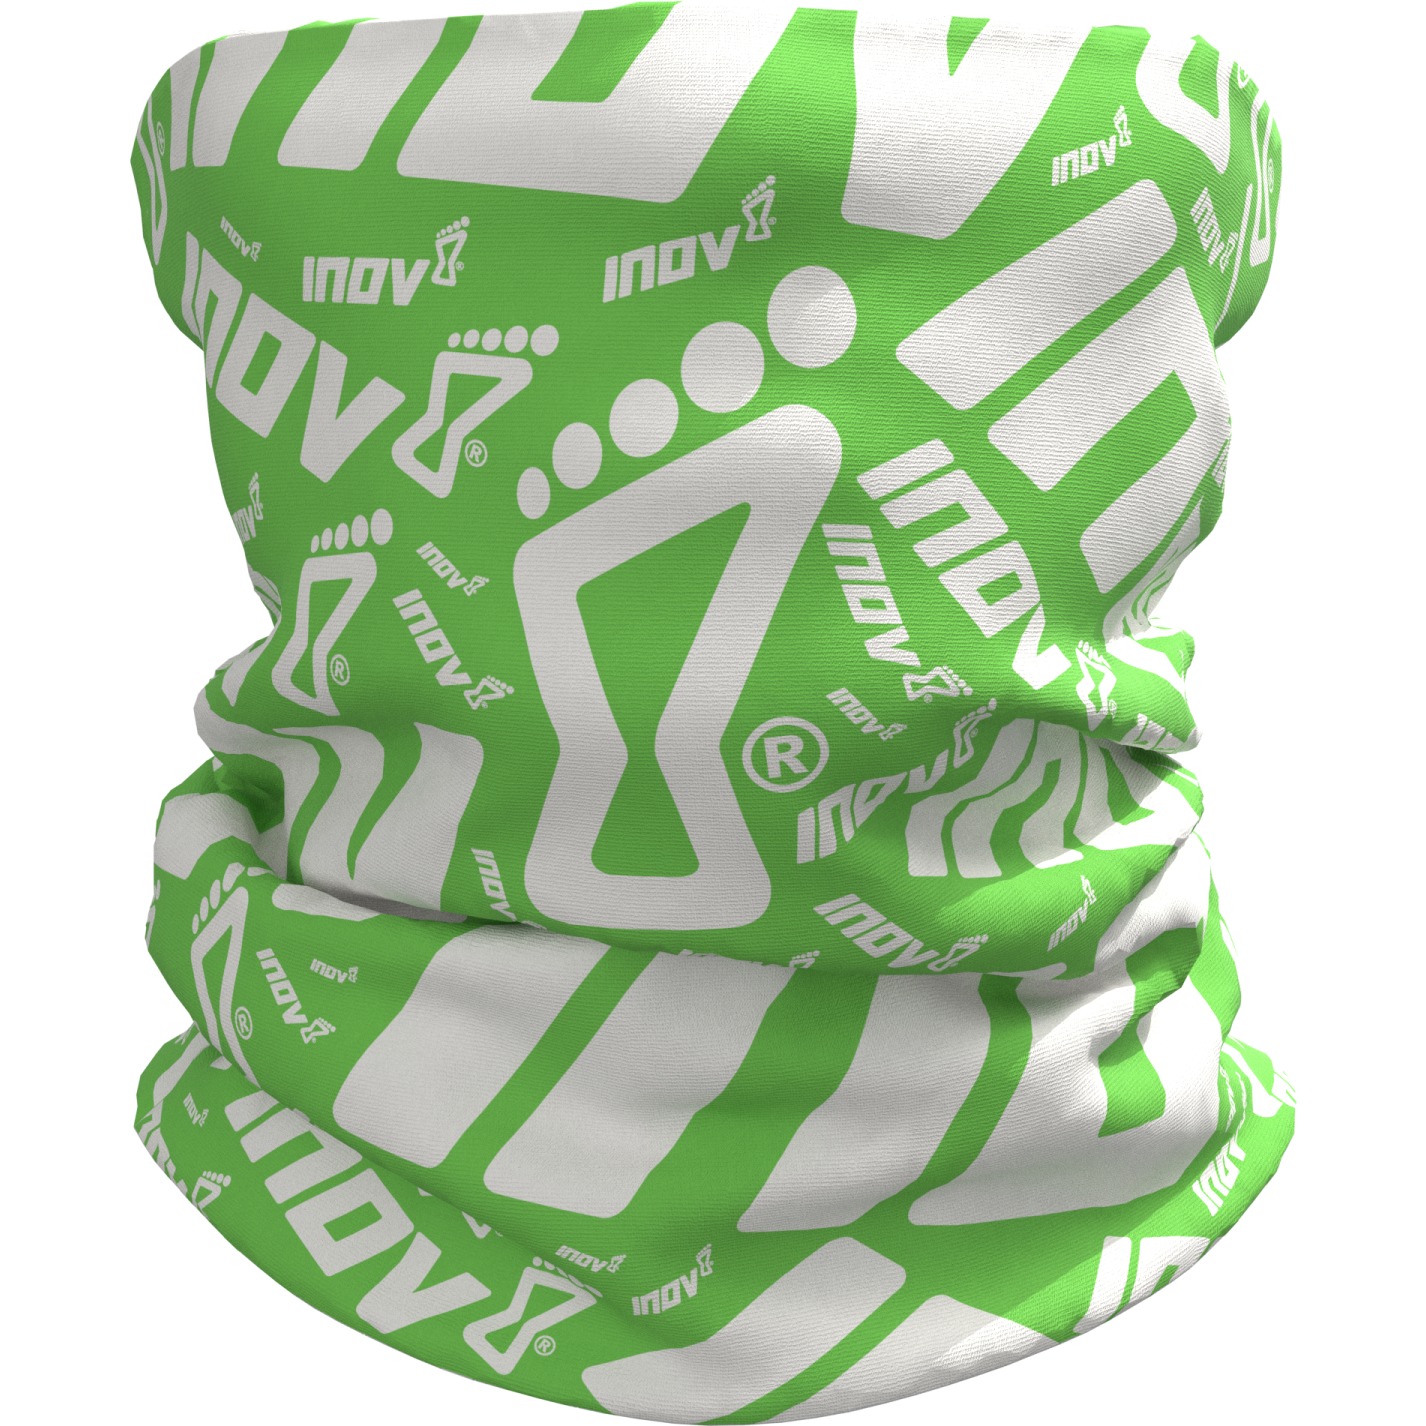 Productfoto van Inov-8 Snood Multifunctioneel Doek (Set à 2 Stuks) - zwart/groen / groen/wit